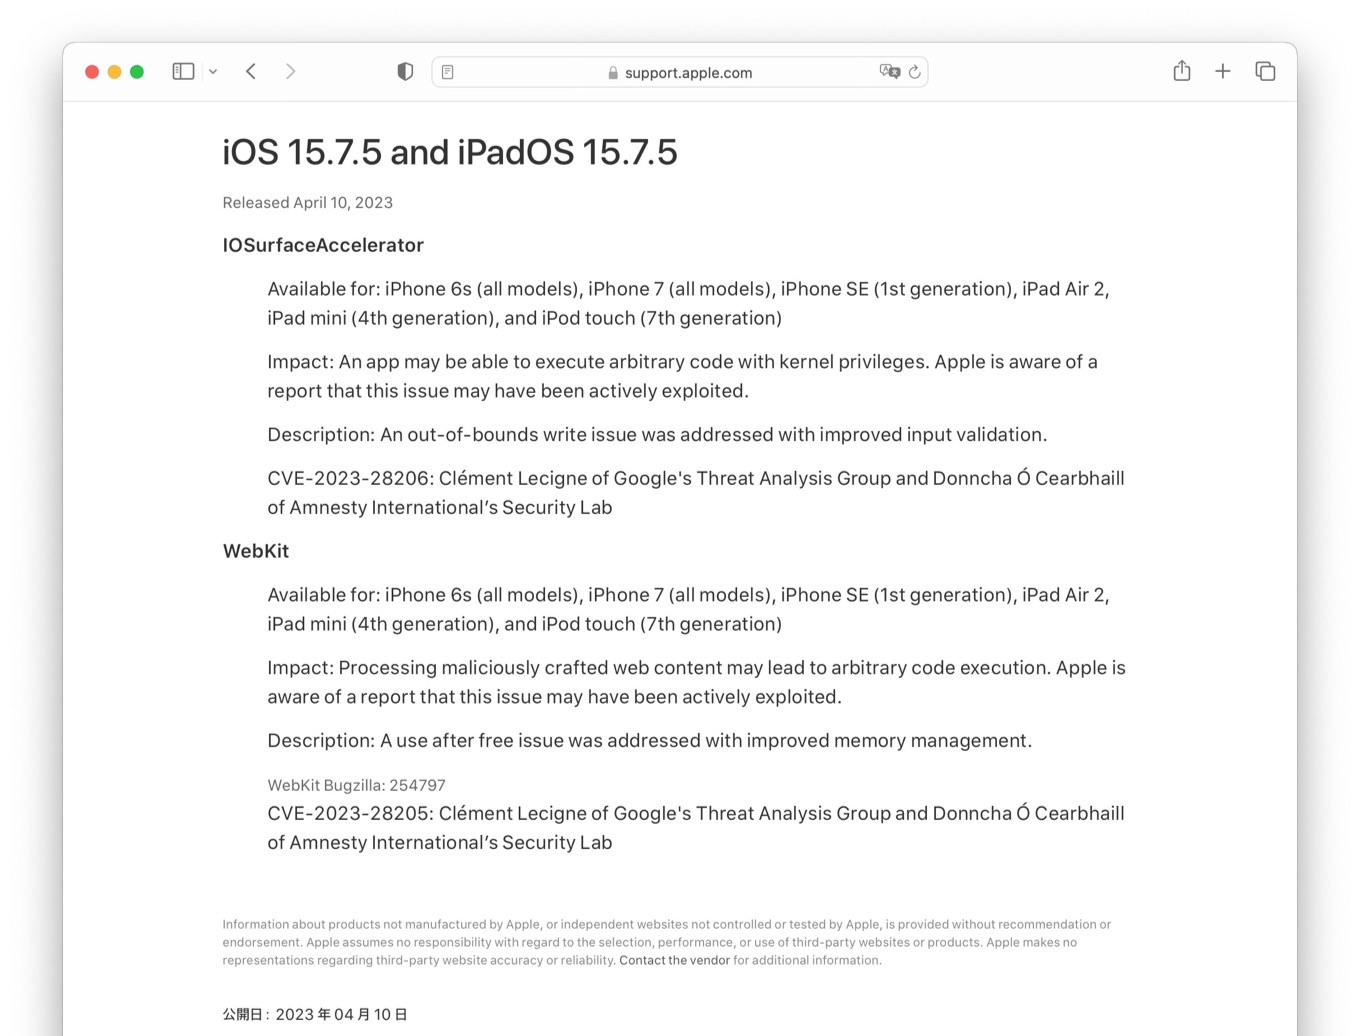 iOS 15.7.5 security update